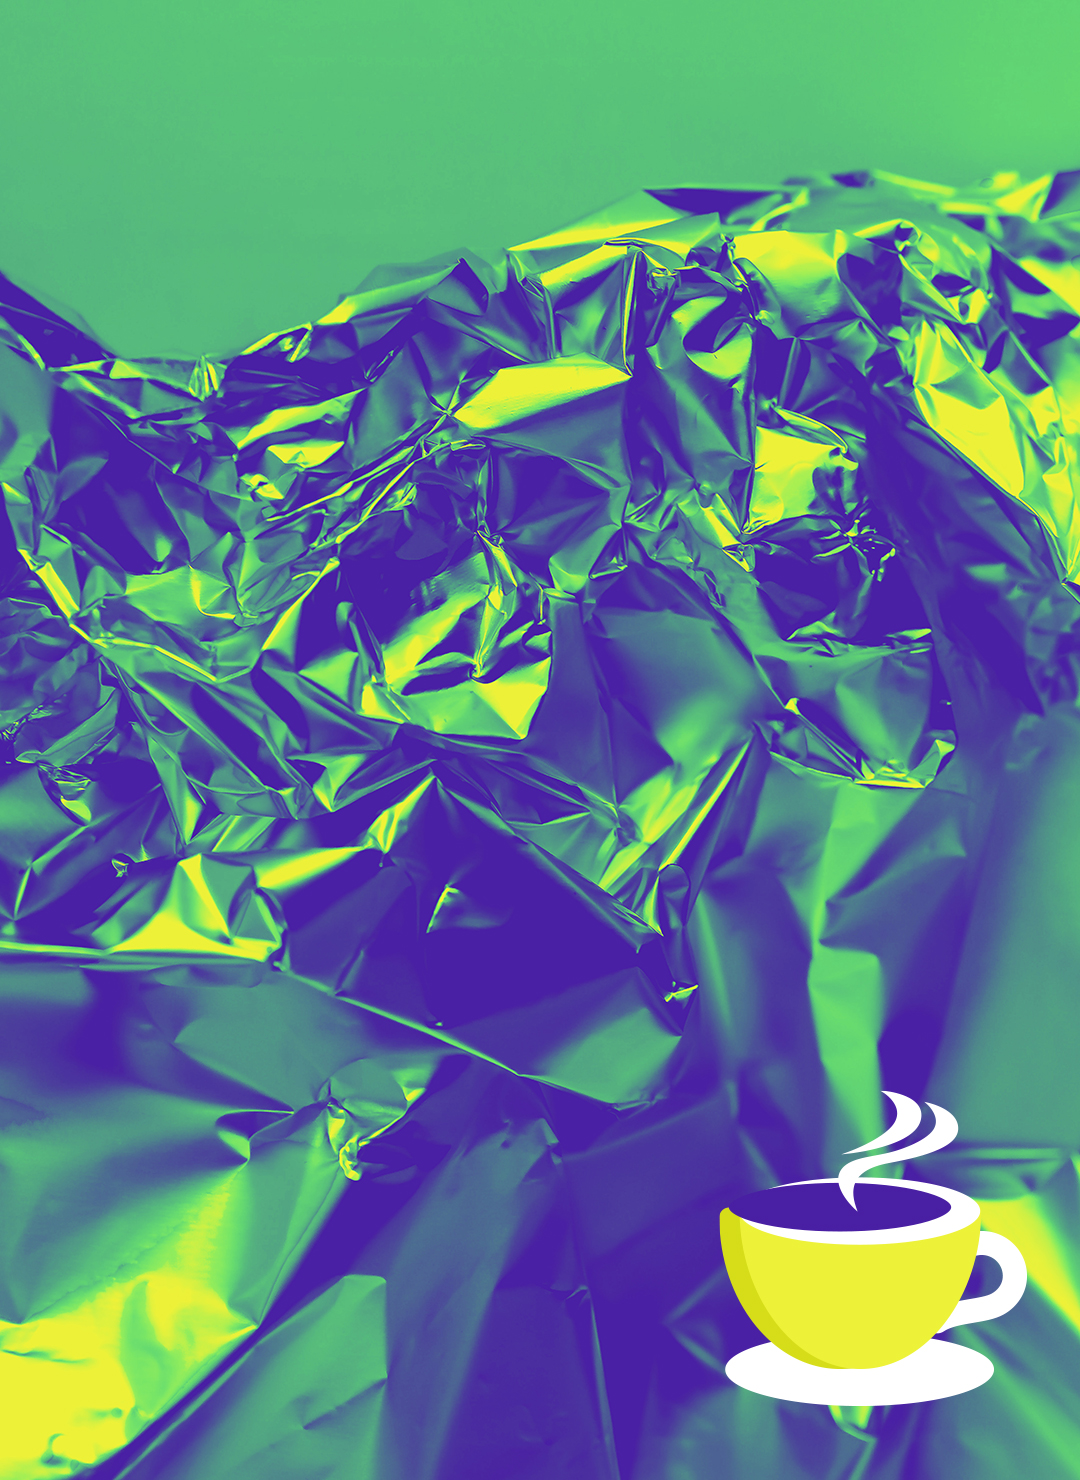 Foto von zerknüllter Alufolie. Das Bild ist in Grün- und Gelbtönen eingefärbt. Unten rechts befindet sich das Symbol einer Tasse mit dampfender Flüssigkeit darin.